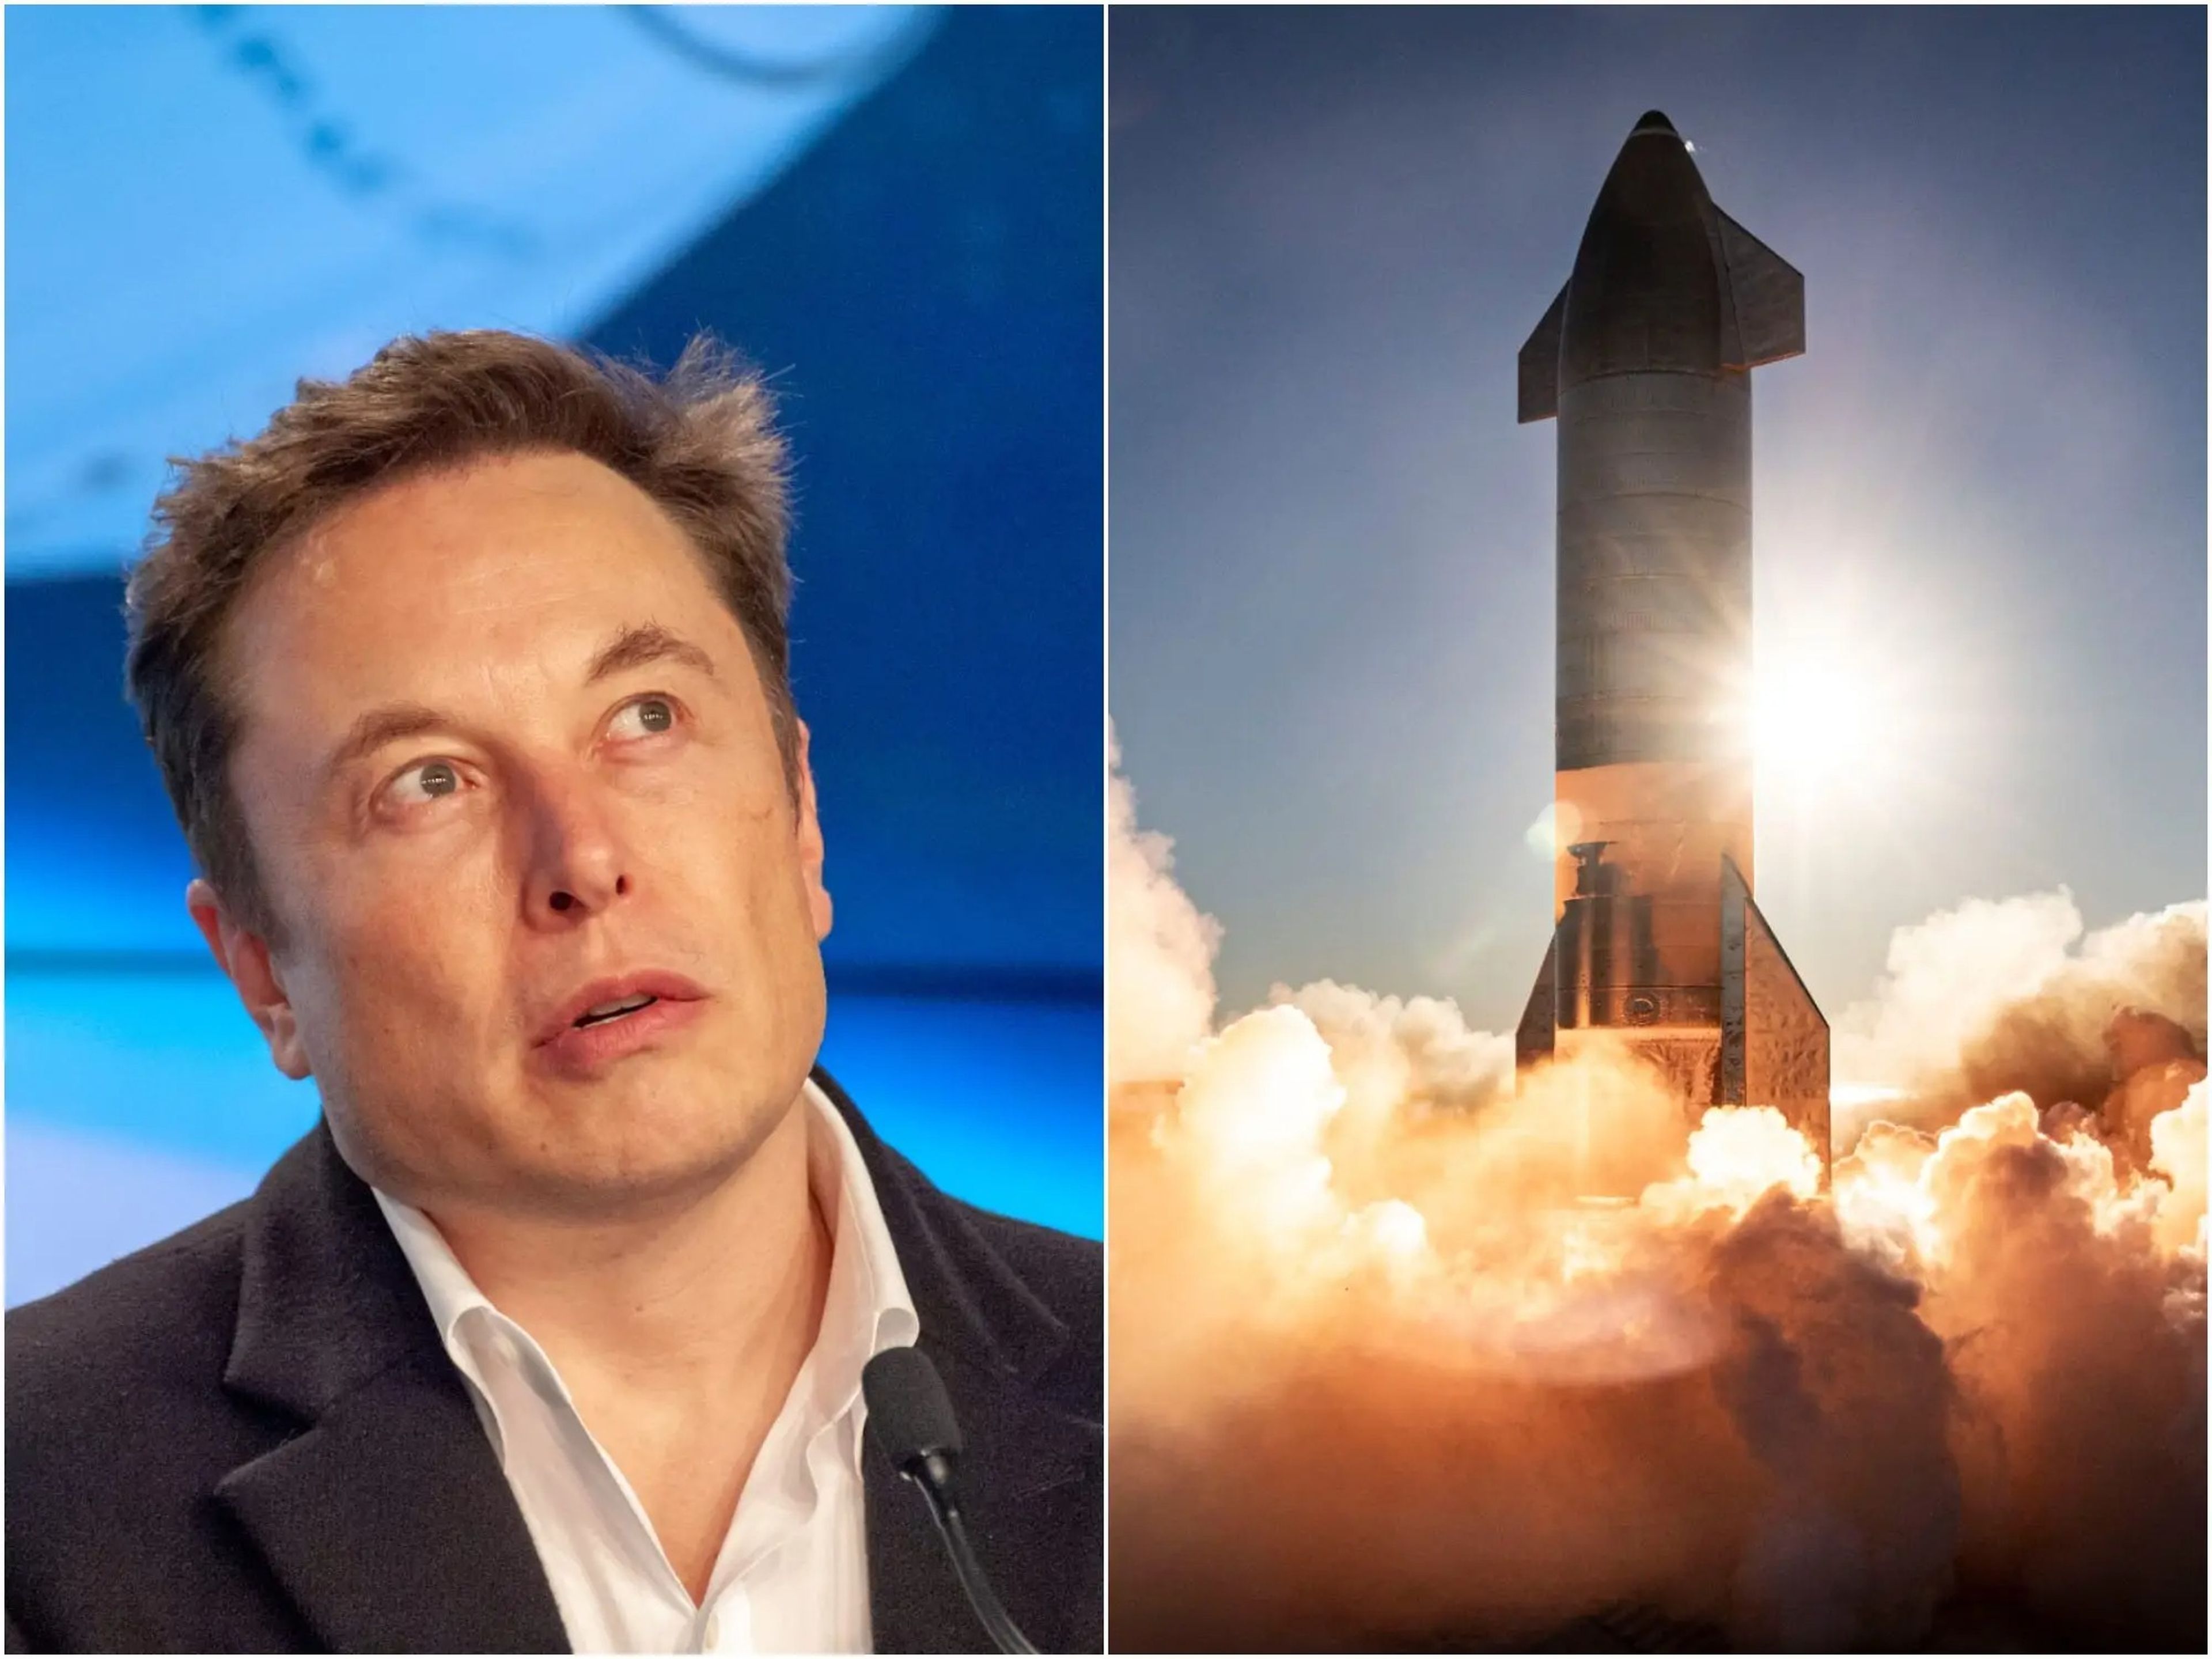 A la izquierda, el fundador de SpaceX, Elon Musk, en una conferencia de prensa el 2 de marzo de 2019; a la derecha, lanzamiento del prototipo del cohete número 8 Starship de SpaceX, desde una plataforma en Boca Chica, Texas, el 9 de diciembre de 2020.